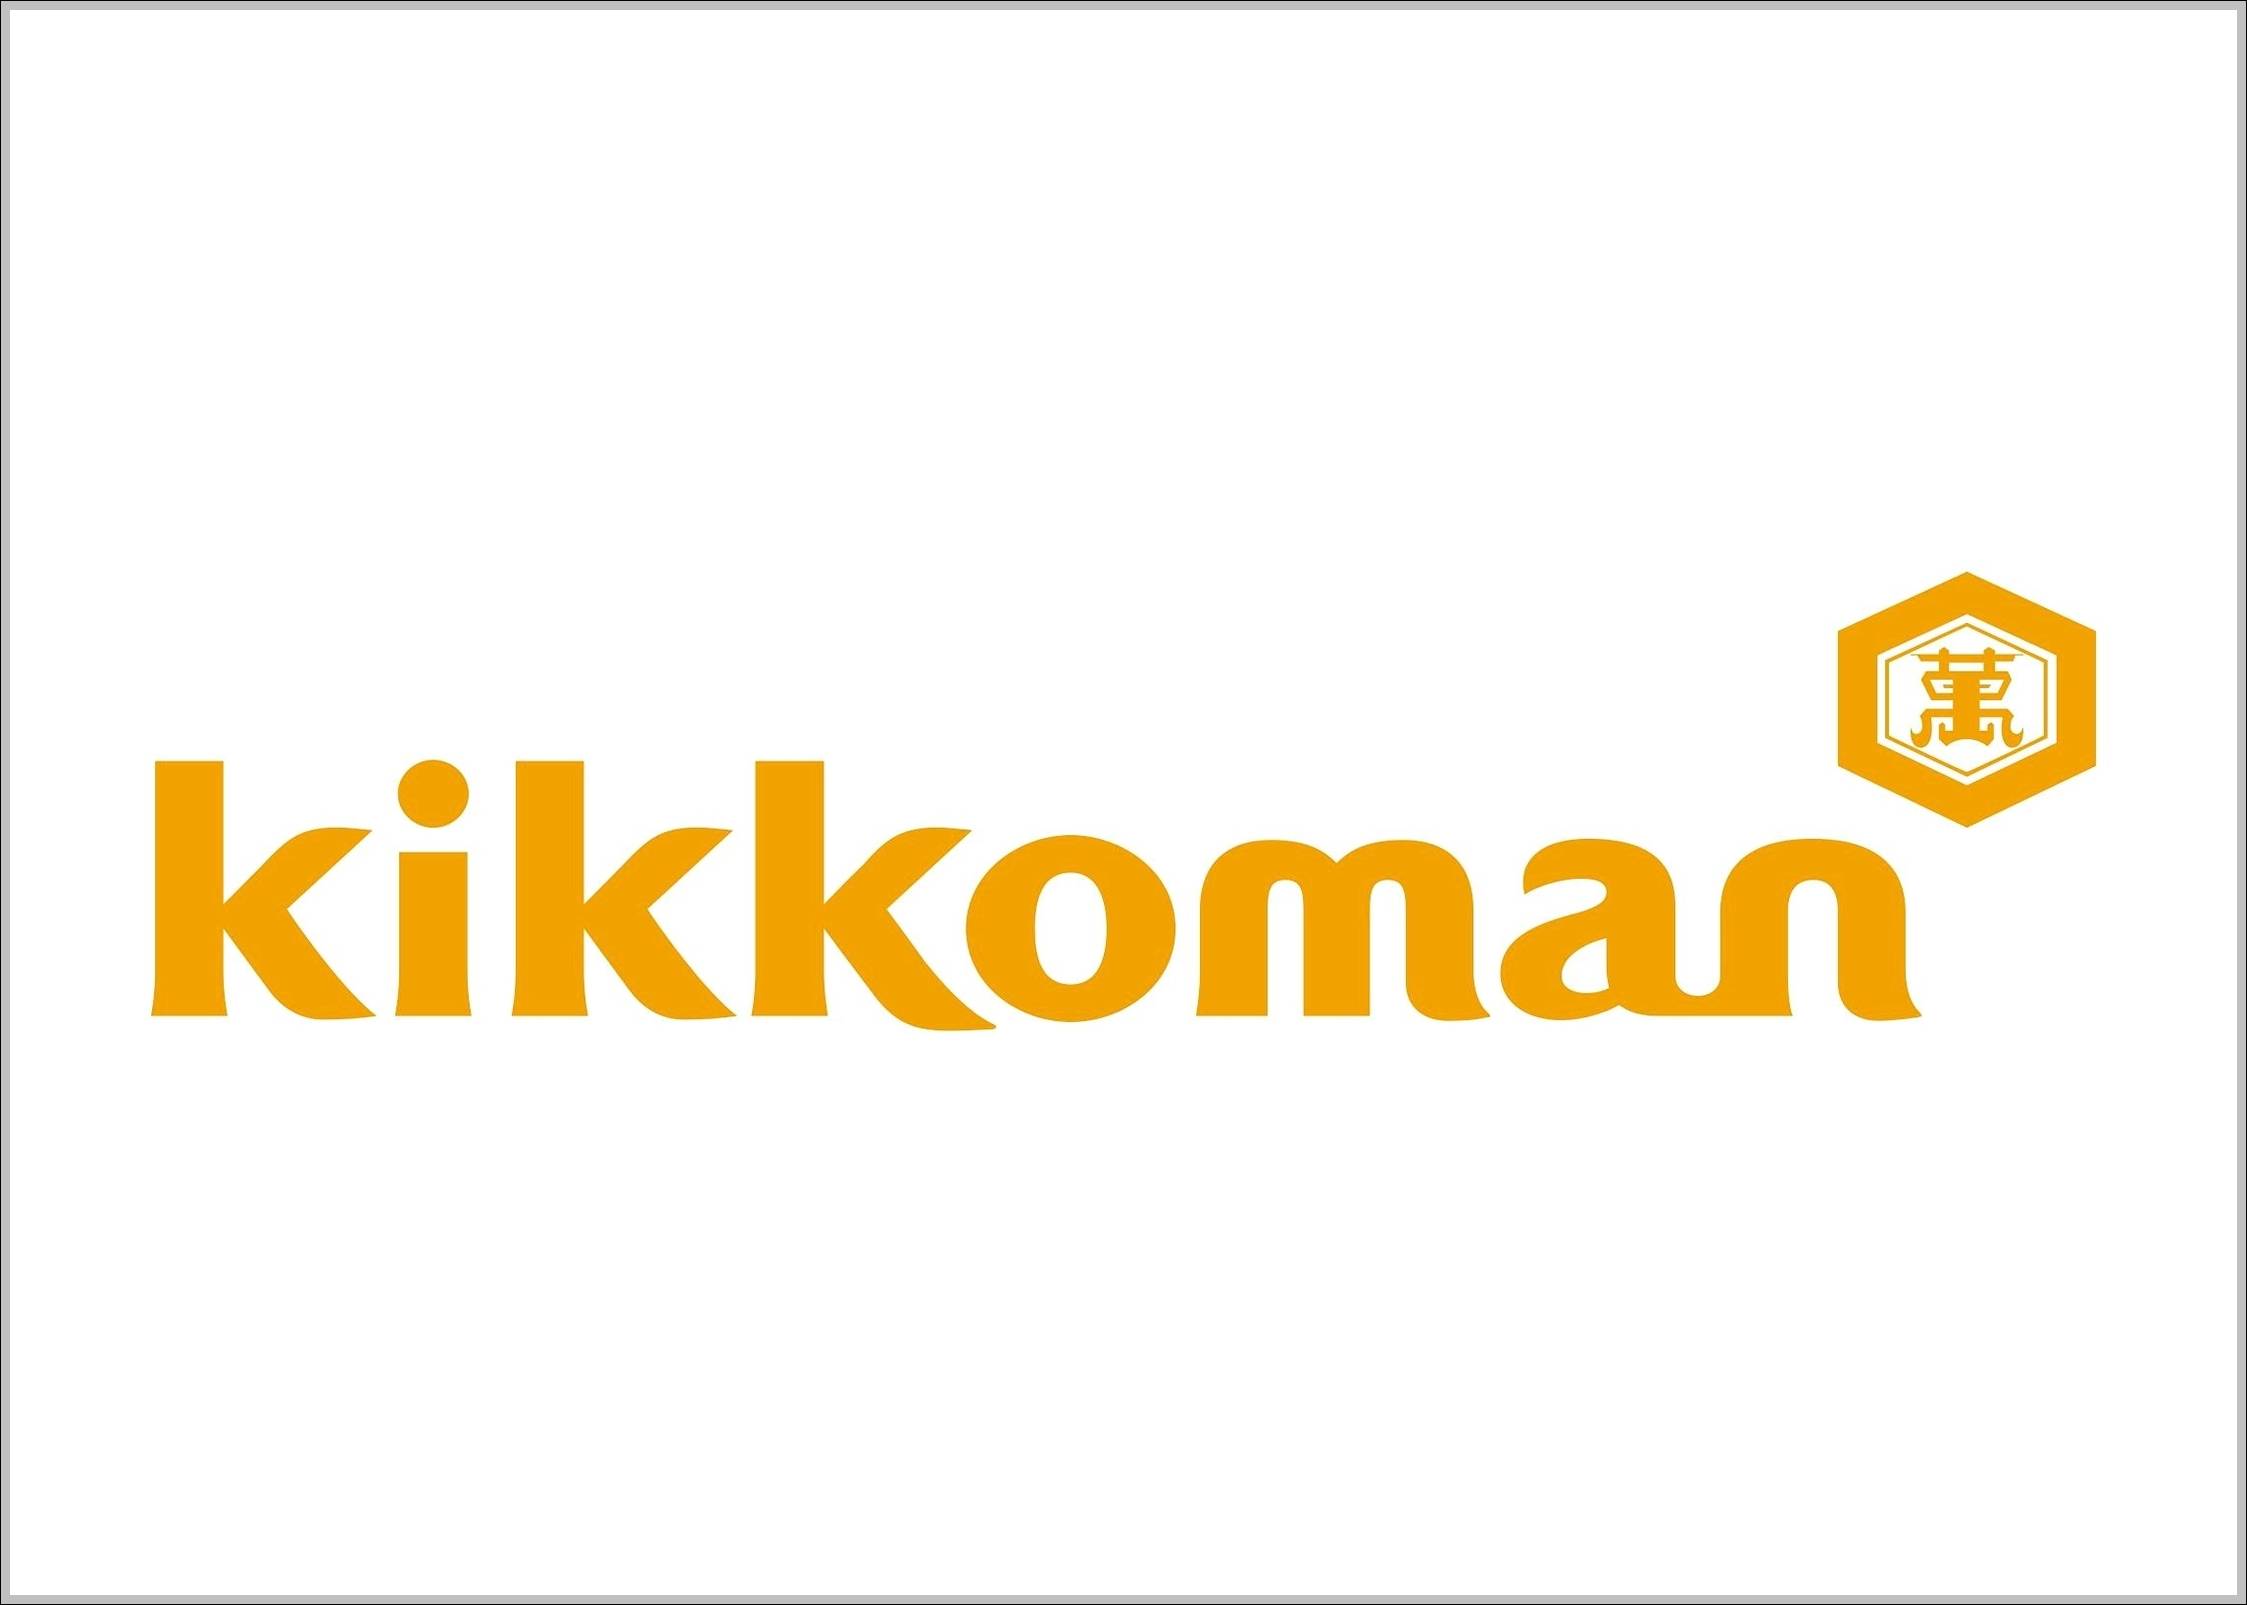 Kikkoman sign